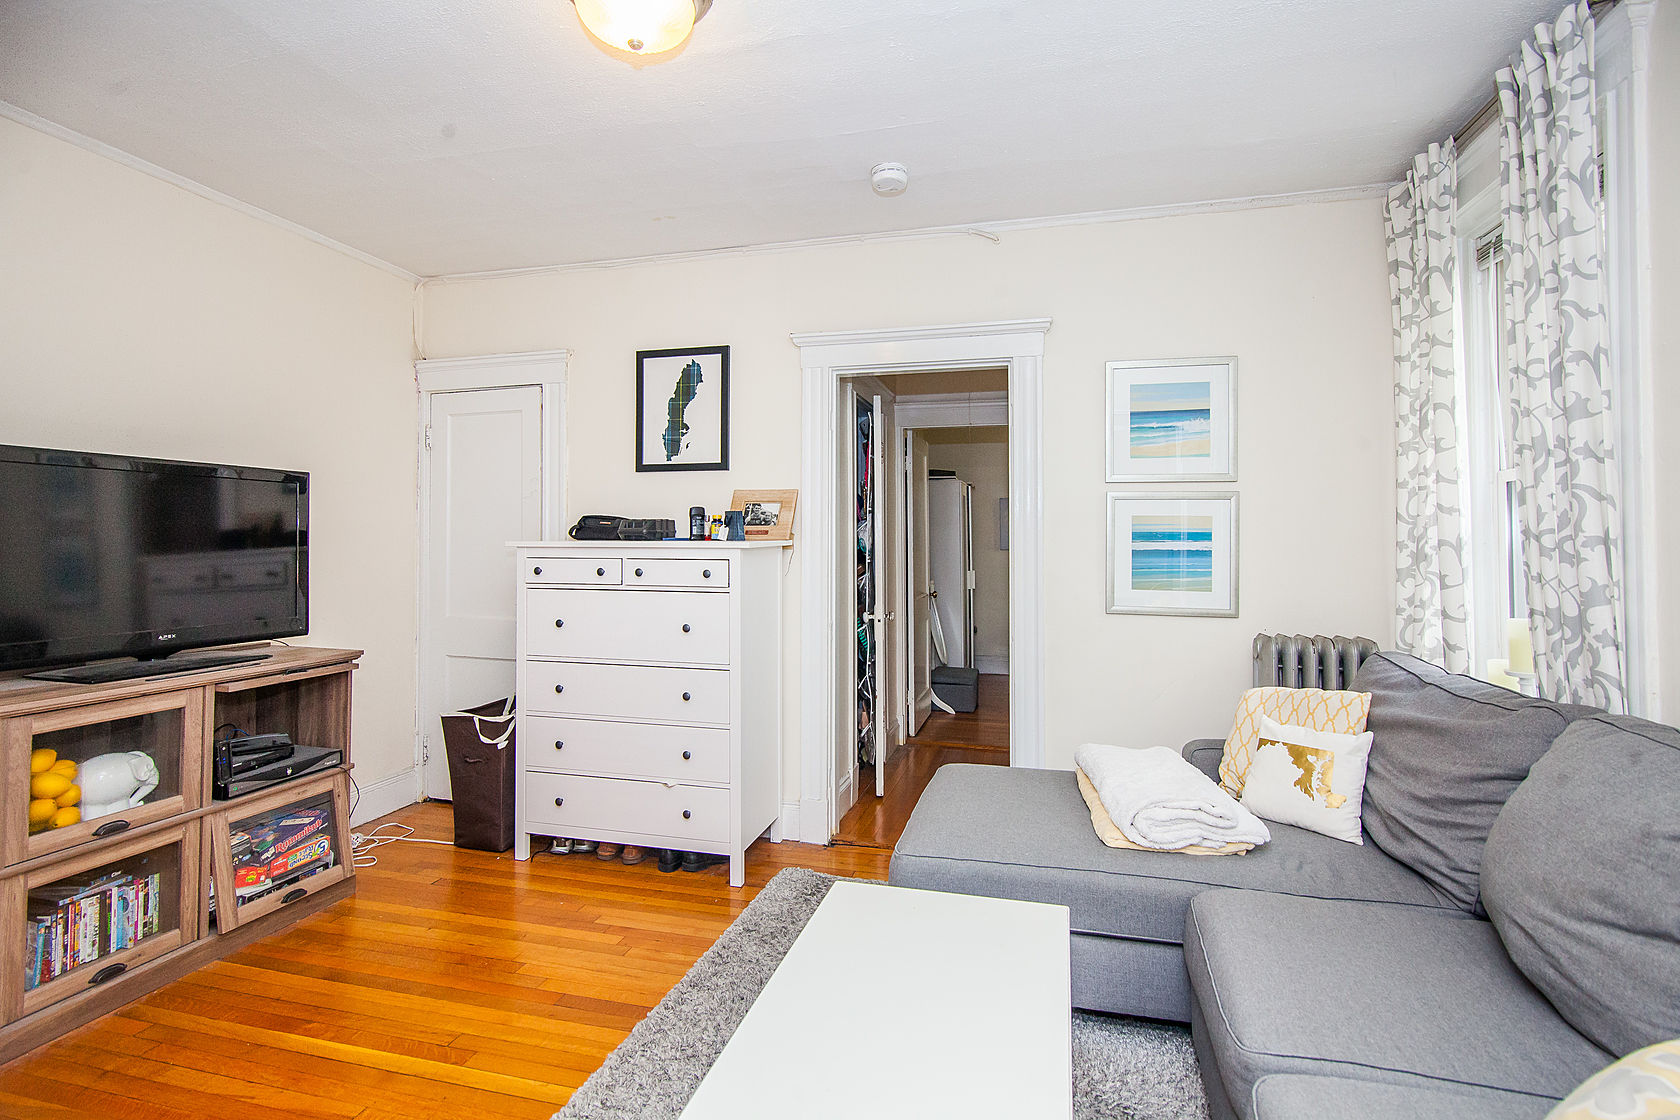 Photos of apartment on Walbridge St.,Boston MA 02134